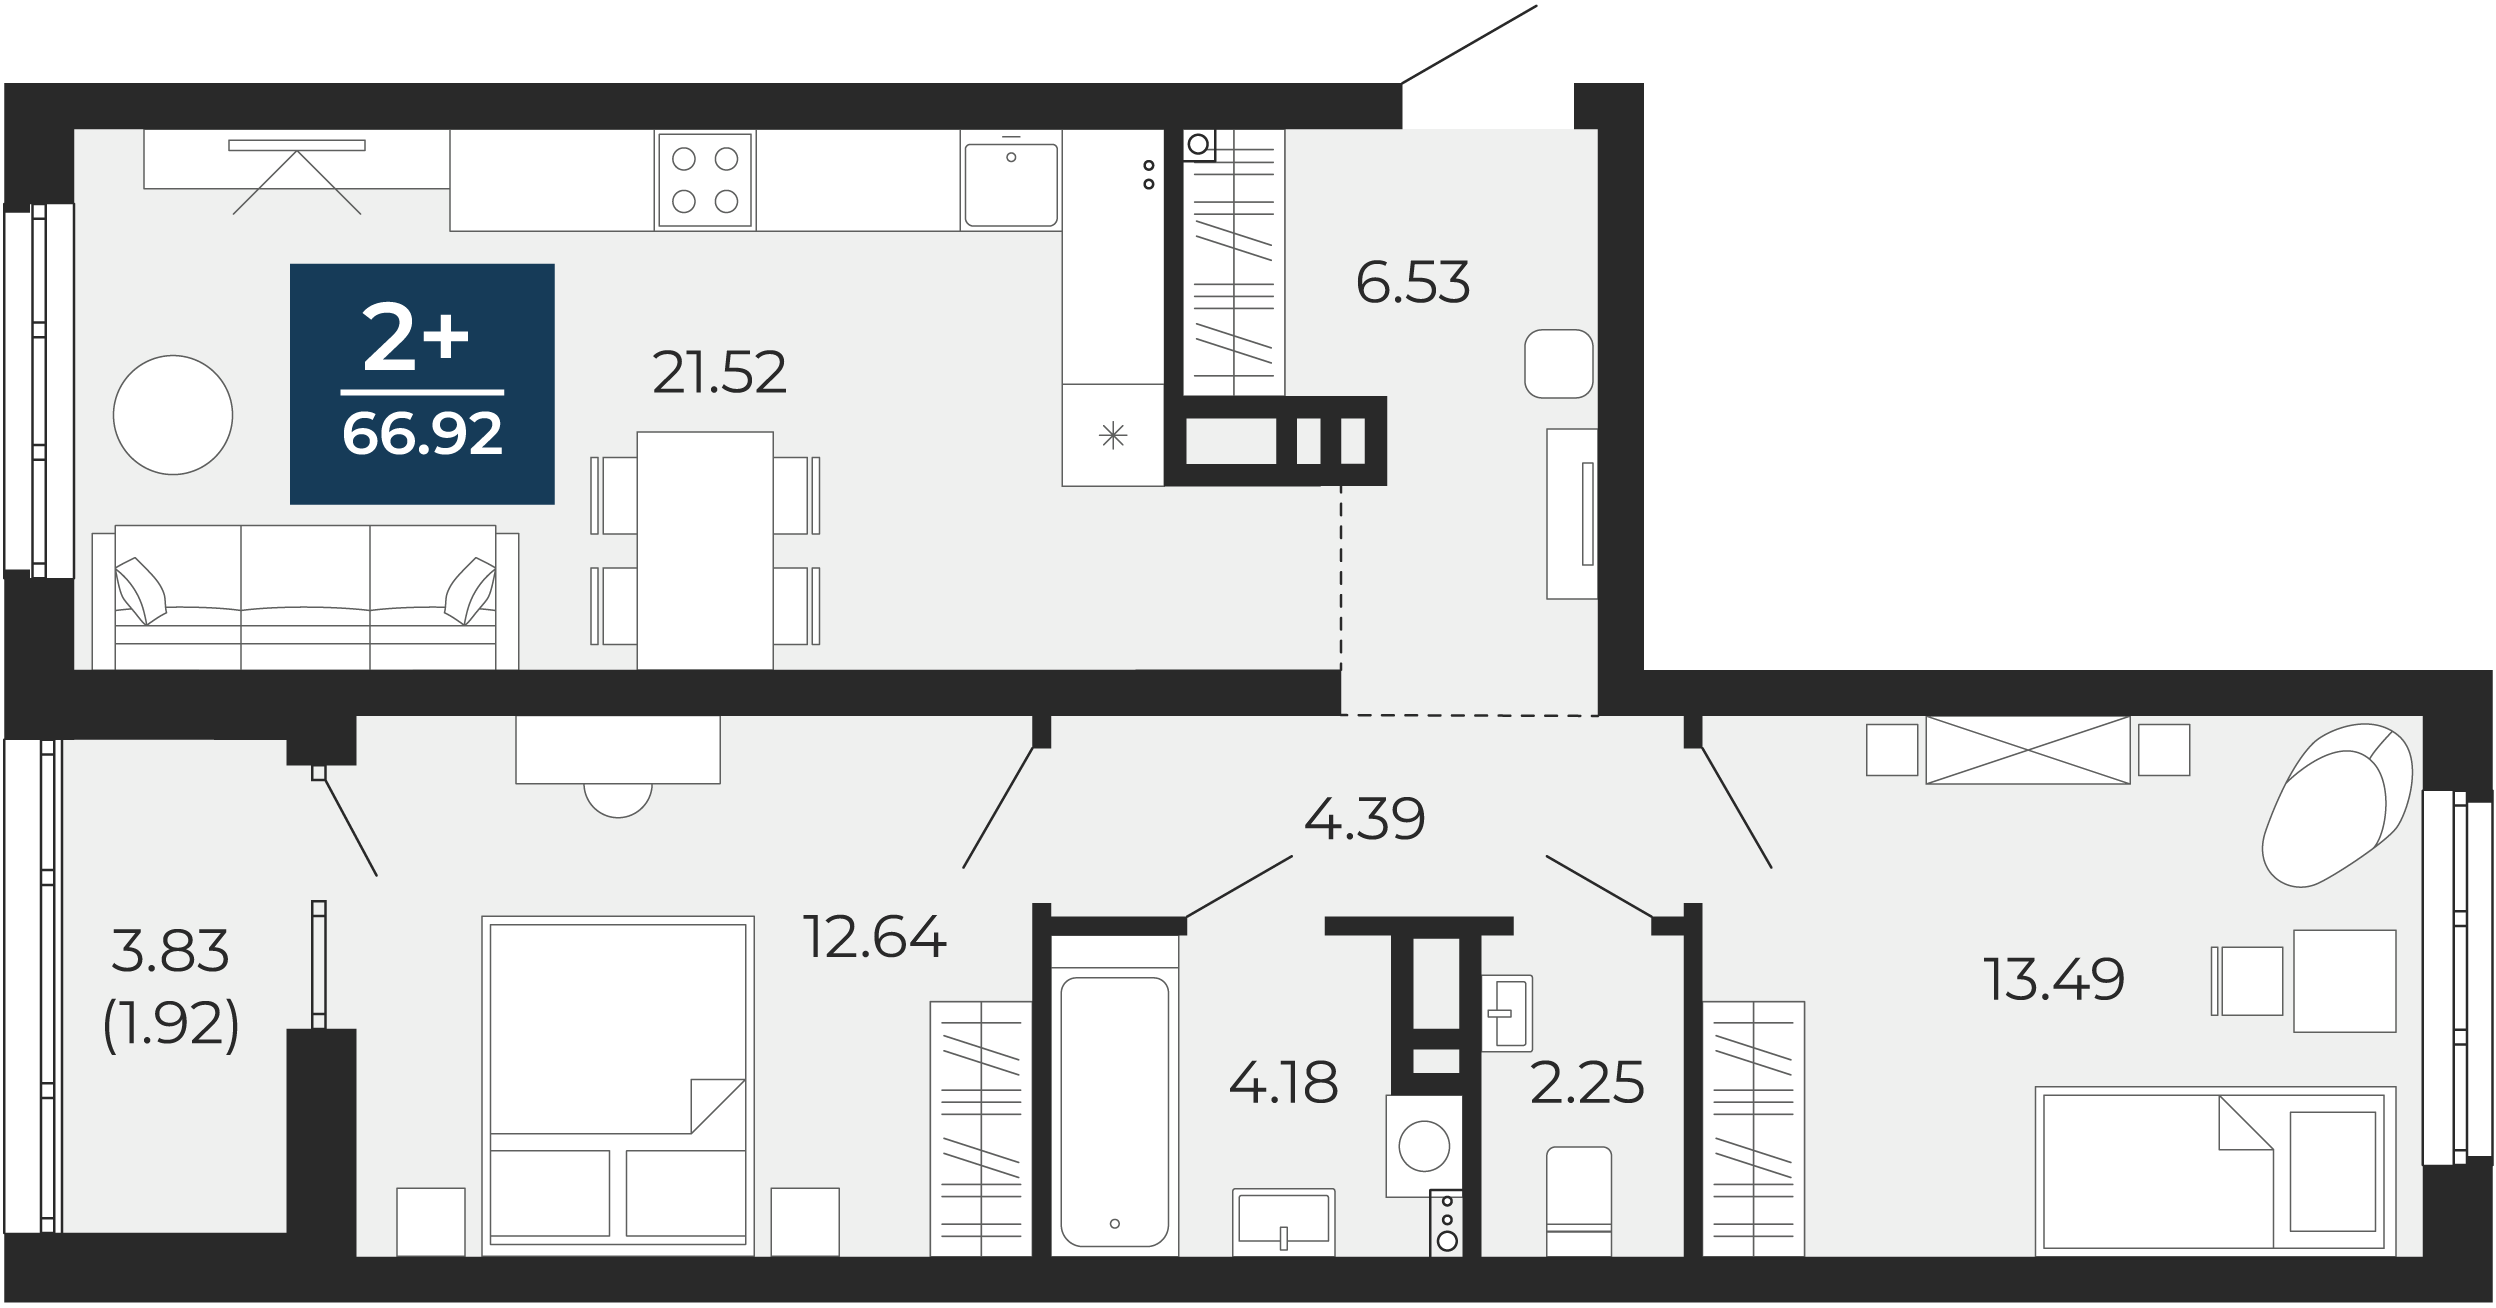 Квартира № 113, 2-комнатная, 66.92 кв. м, 2 этаж